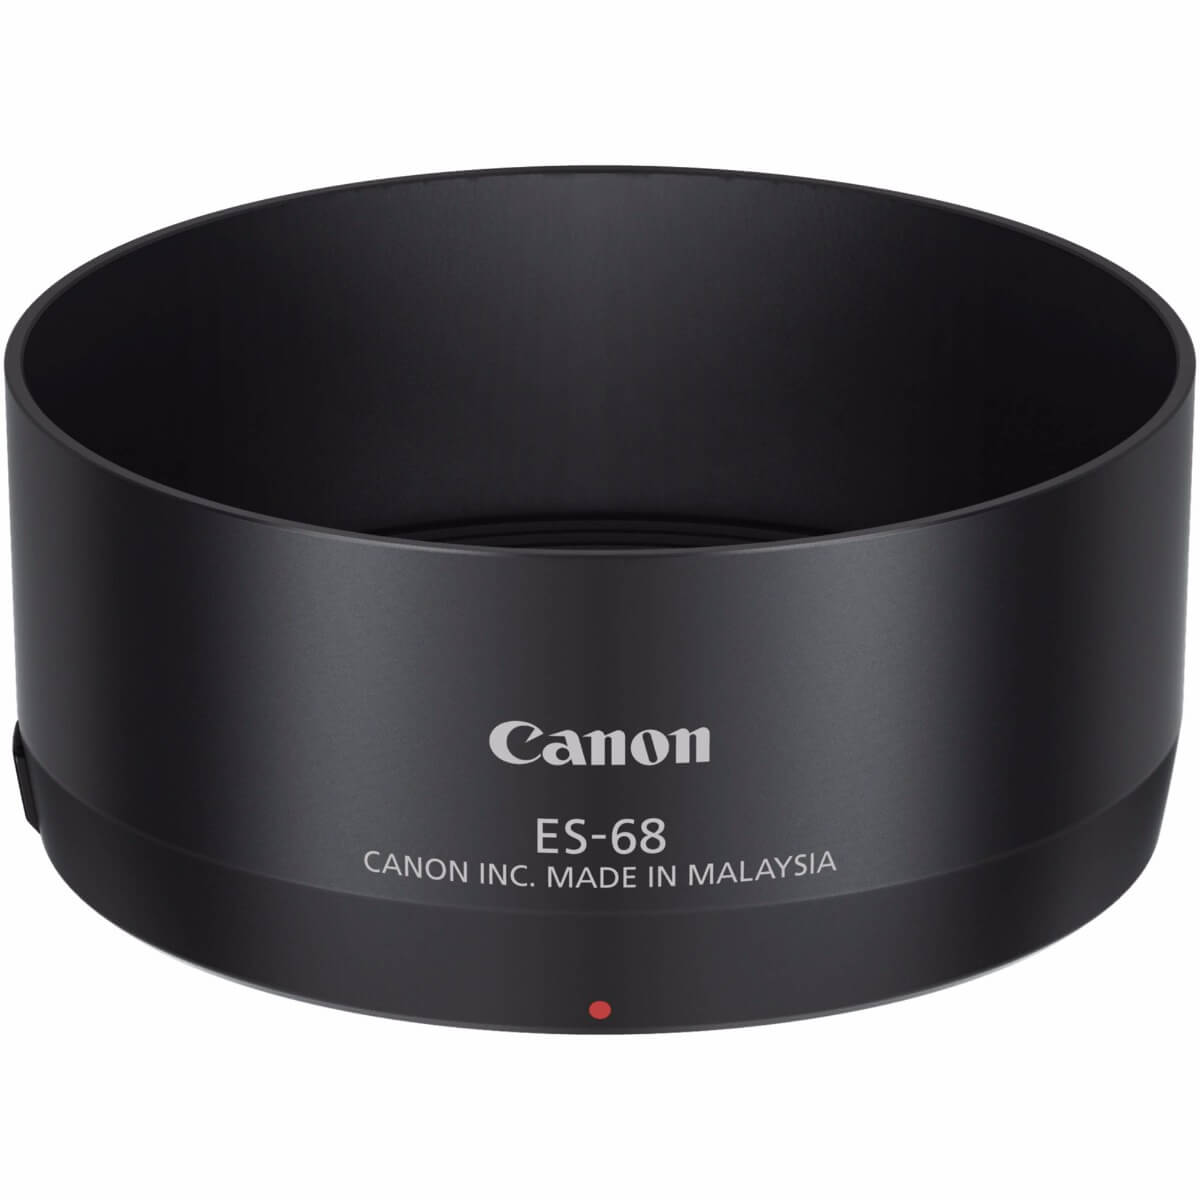 Image of Canon ES68 Lens Hood for EF5018STM